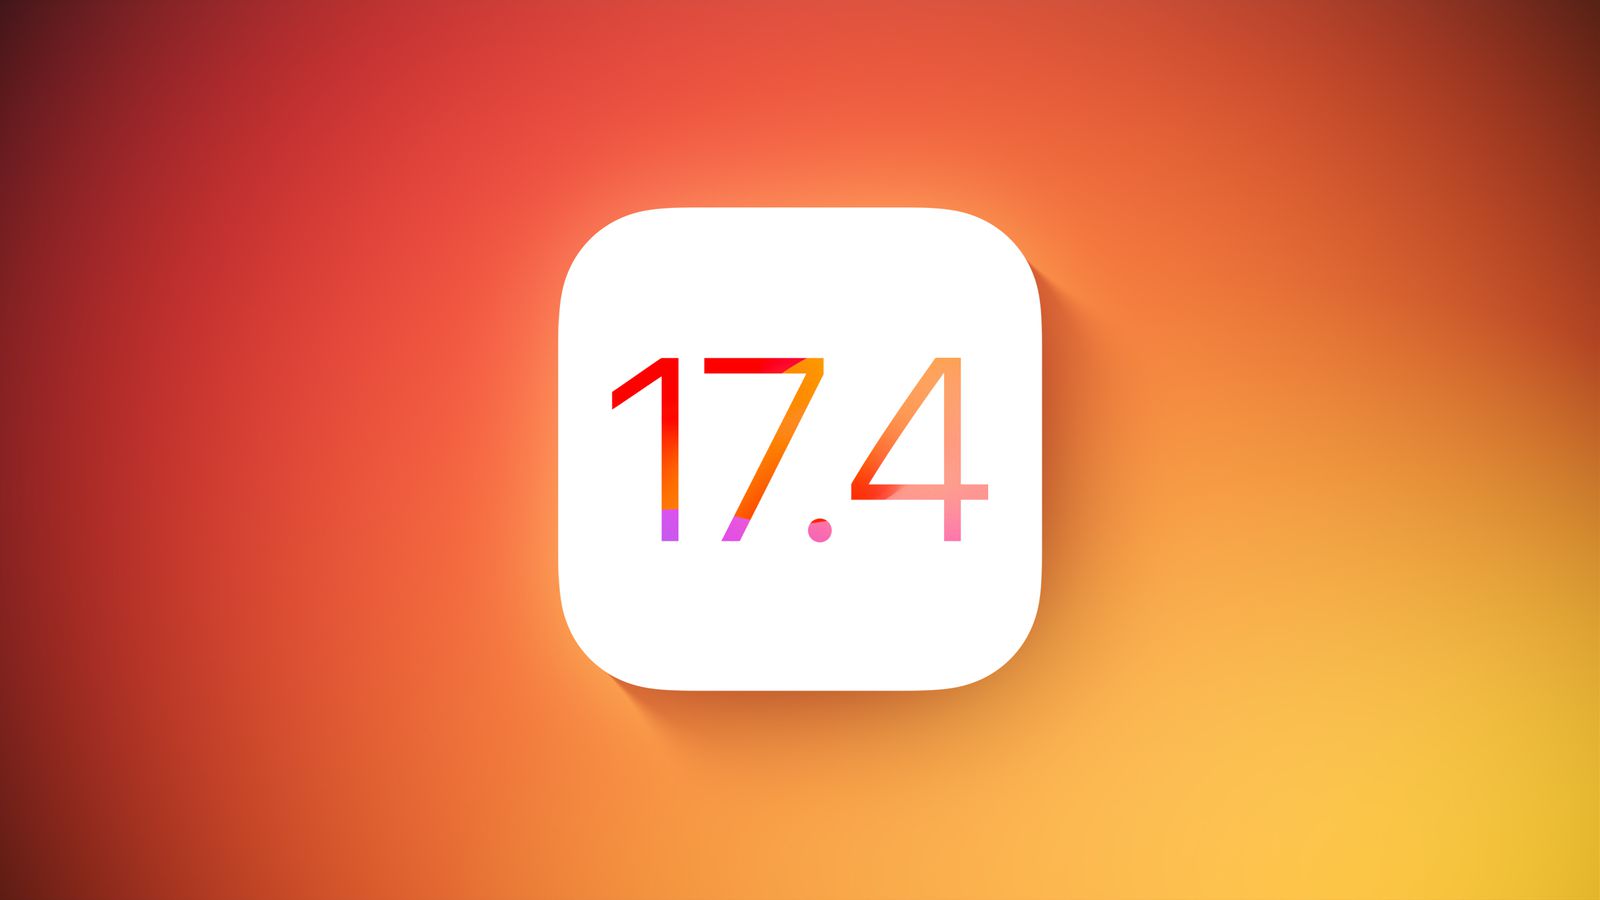 Вышла iOS 17.4 beta 1 для разработчиков